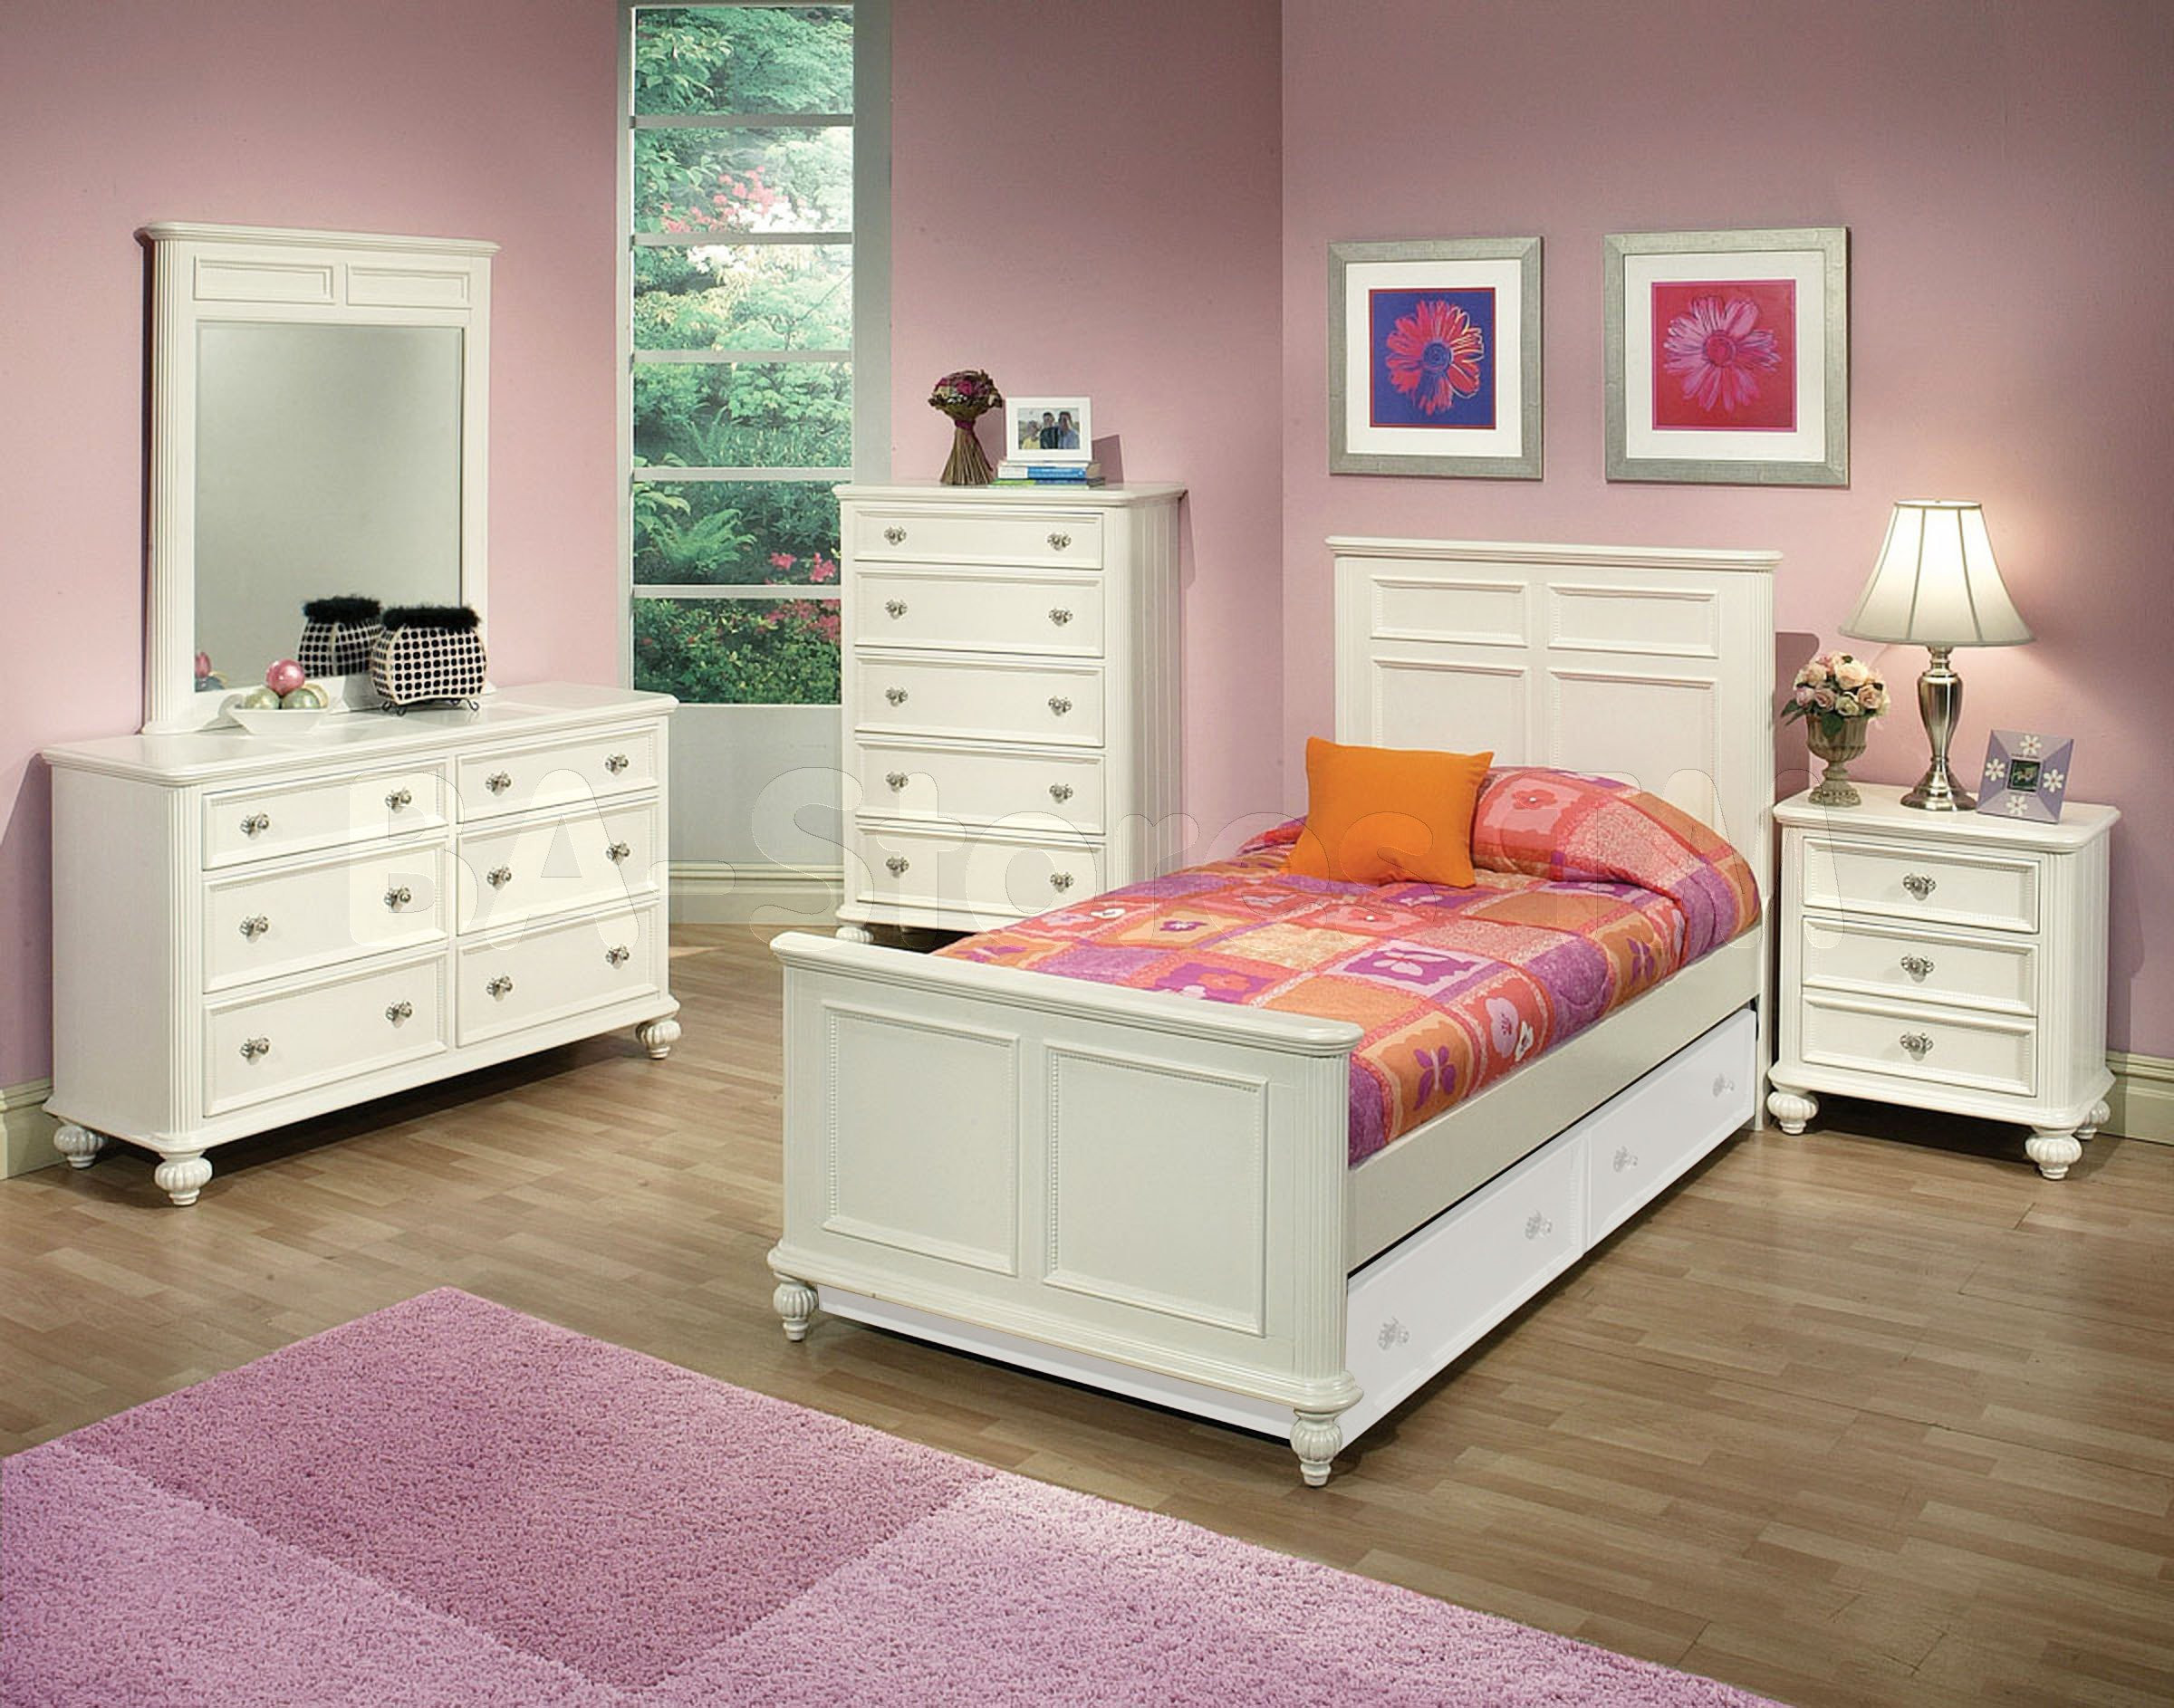 Bedroom Set For Boys
 Solid wood bedroom furniture for kids 20 tips for best